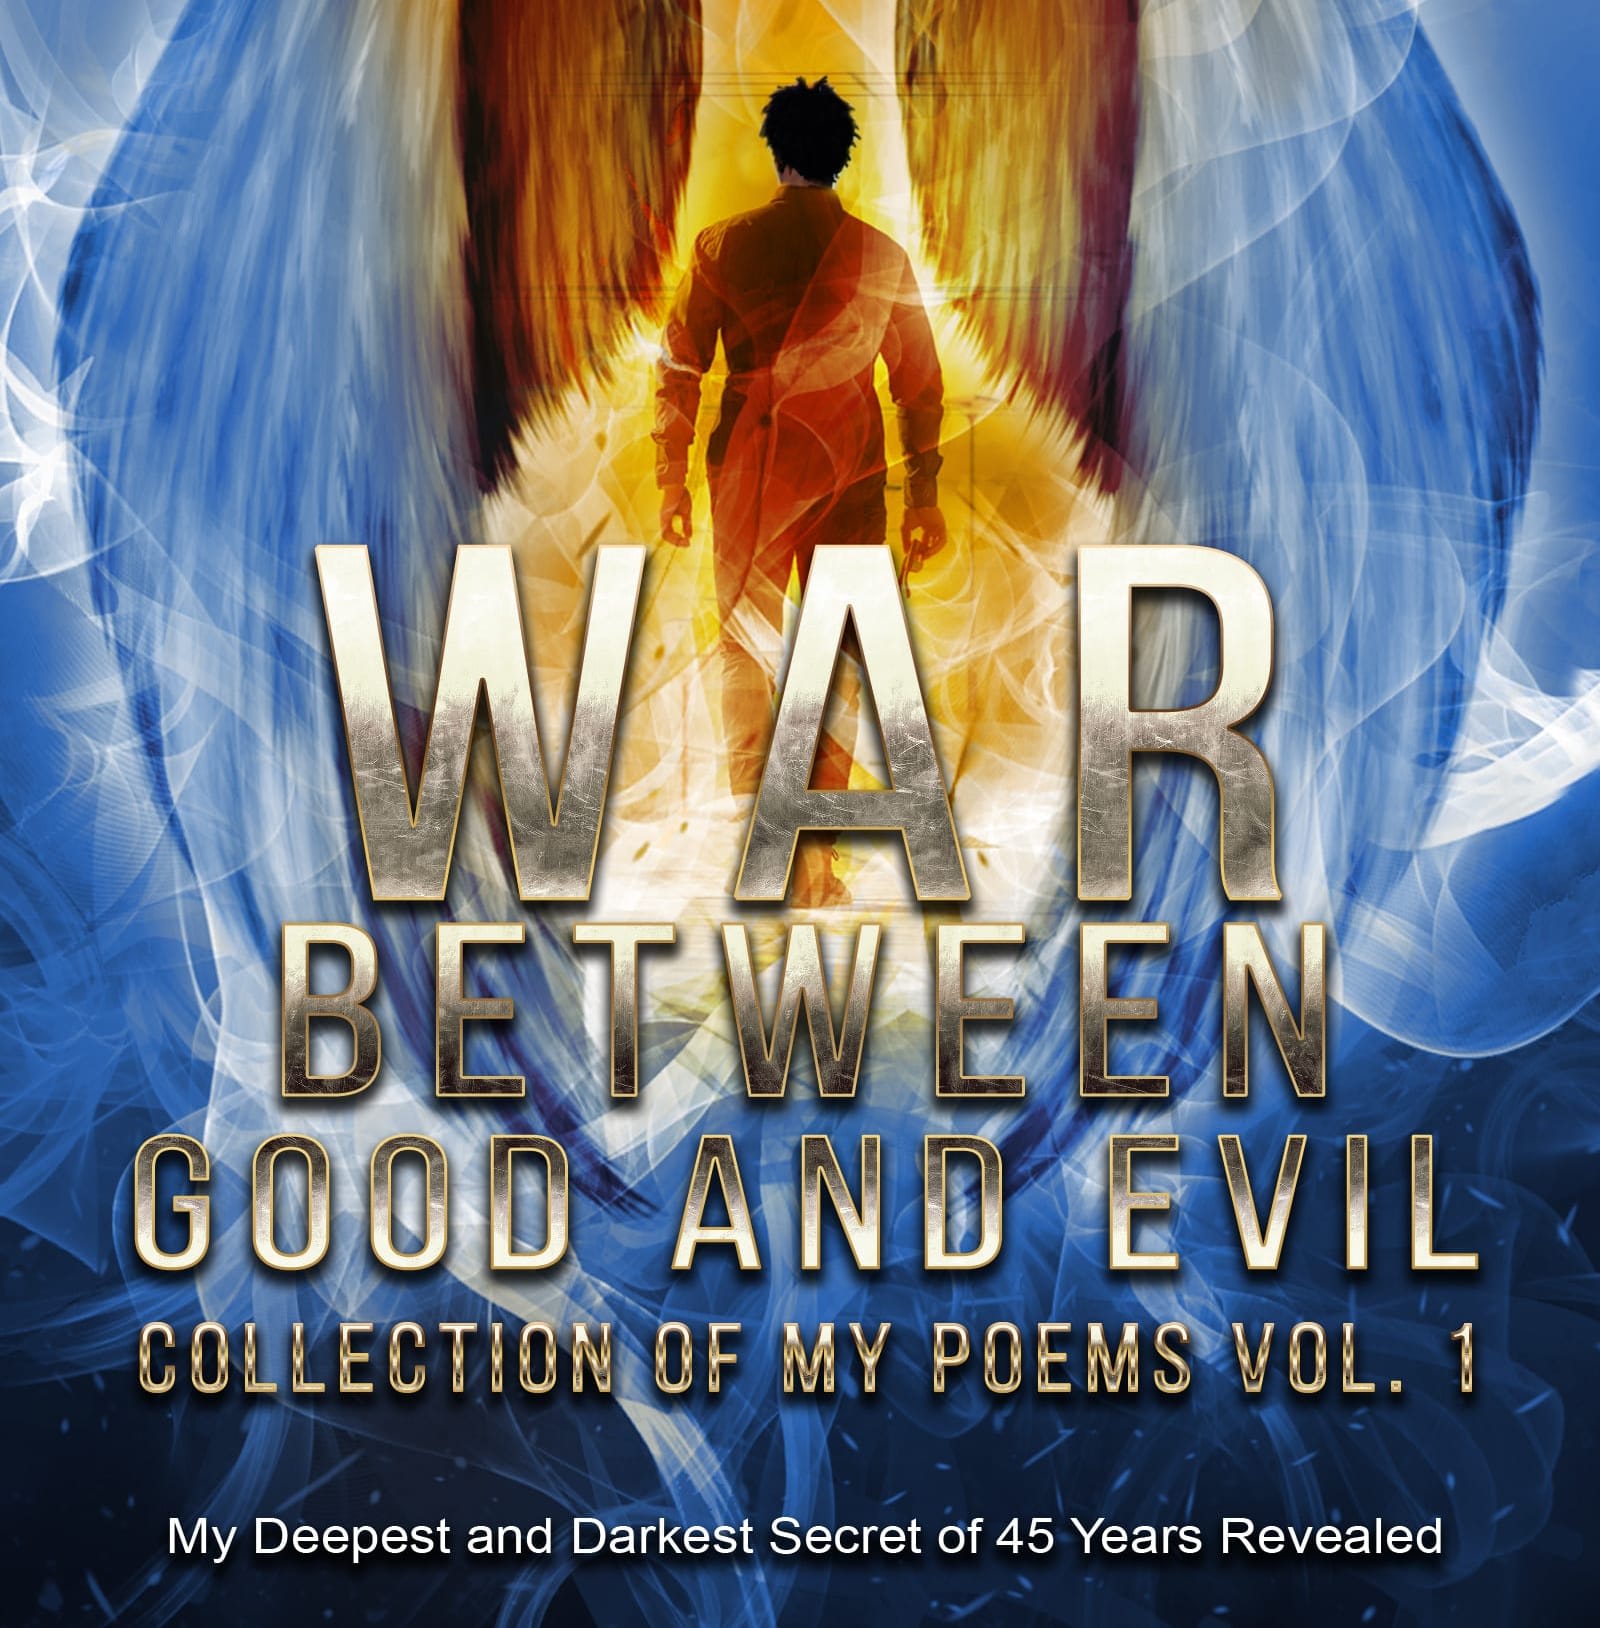 war between good and evil